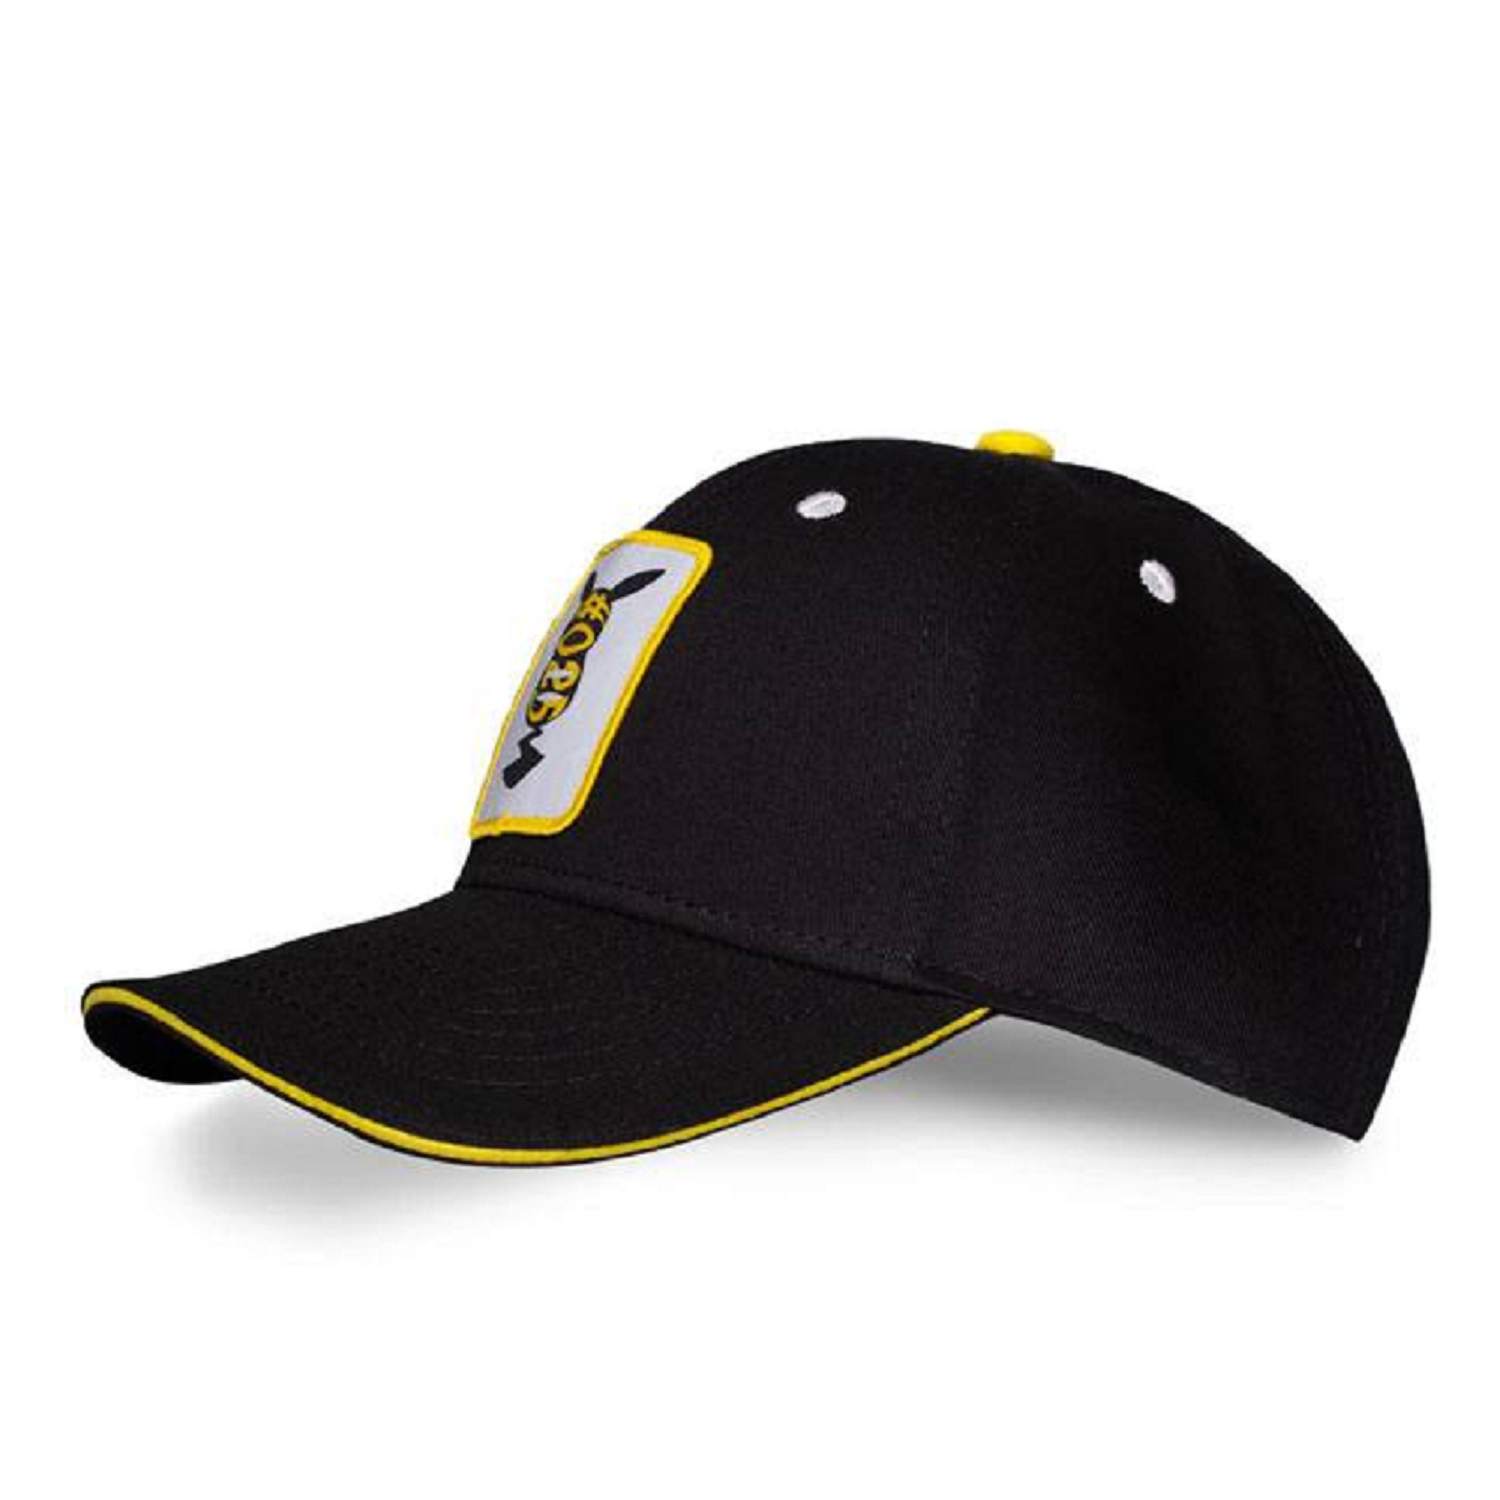 Baseball Pikachu Cap